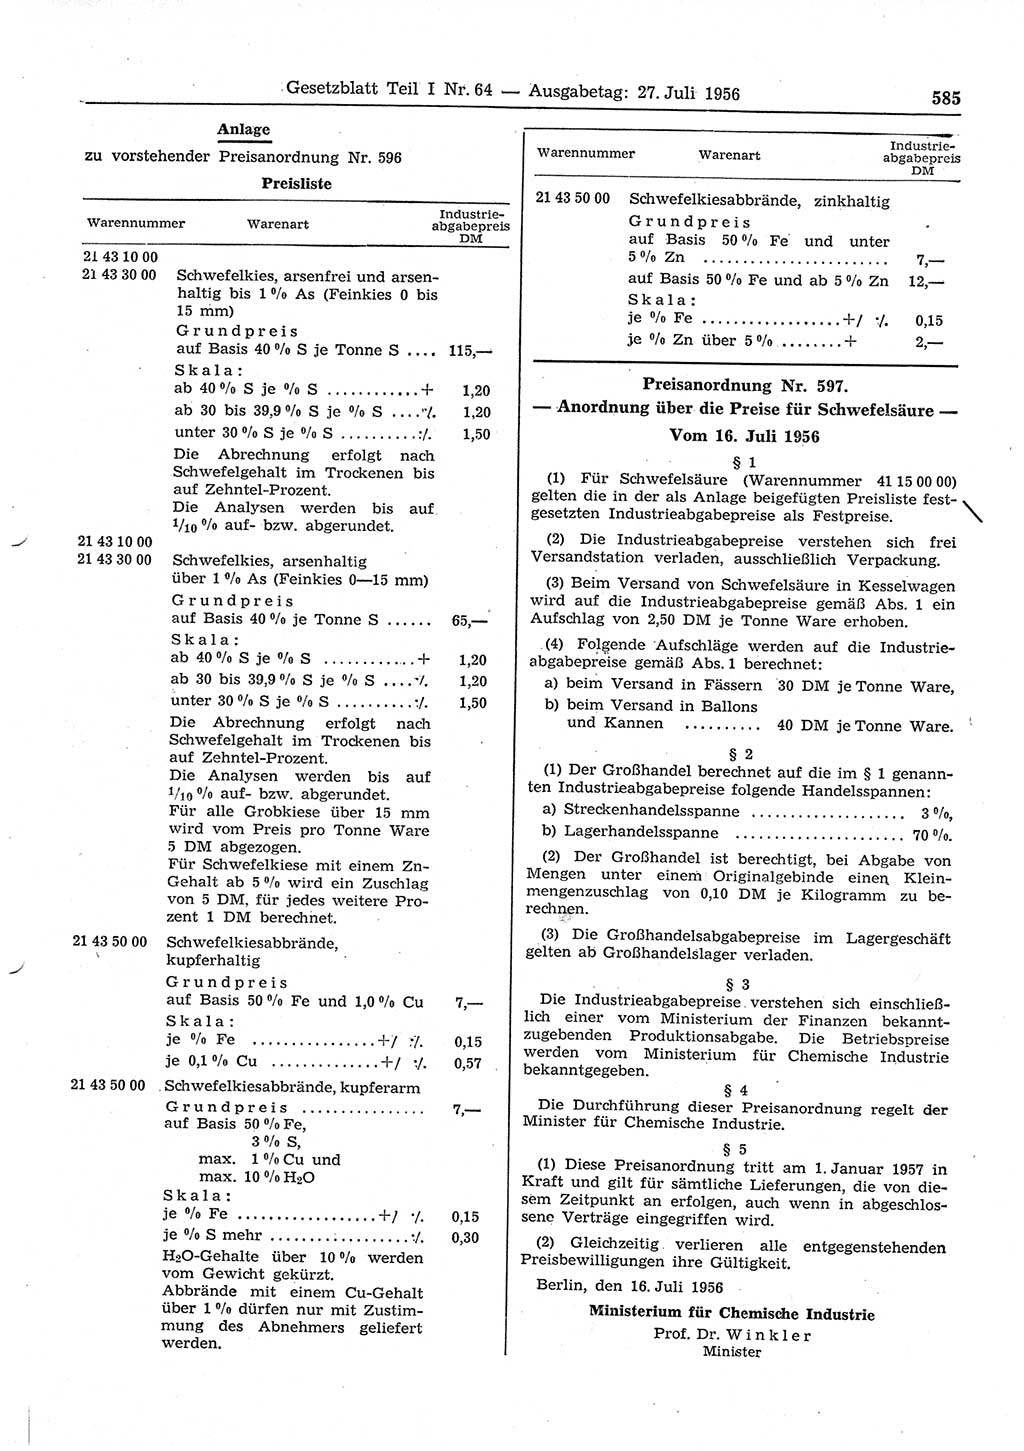 Gesetzblatt (GBl.) der Deutschen Demokratischen Republik (DDR) Teil Ⅰ 1956, Seite 585 (GBl. DDR Ⅰ 1956, S. 585)